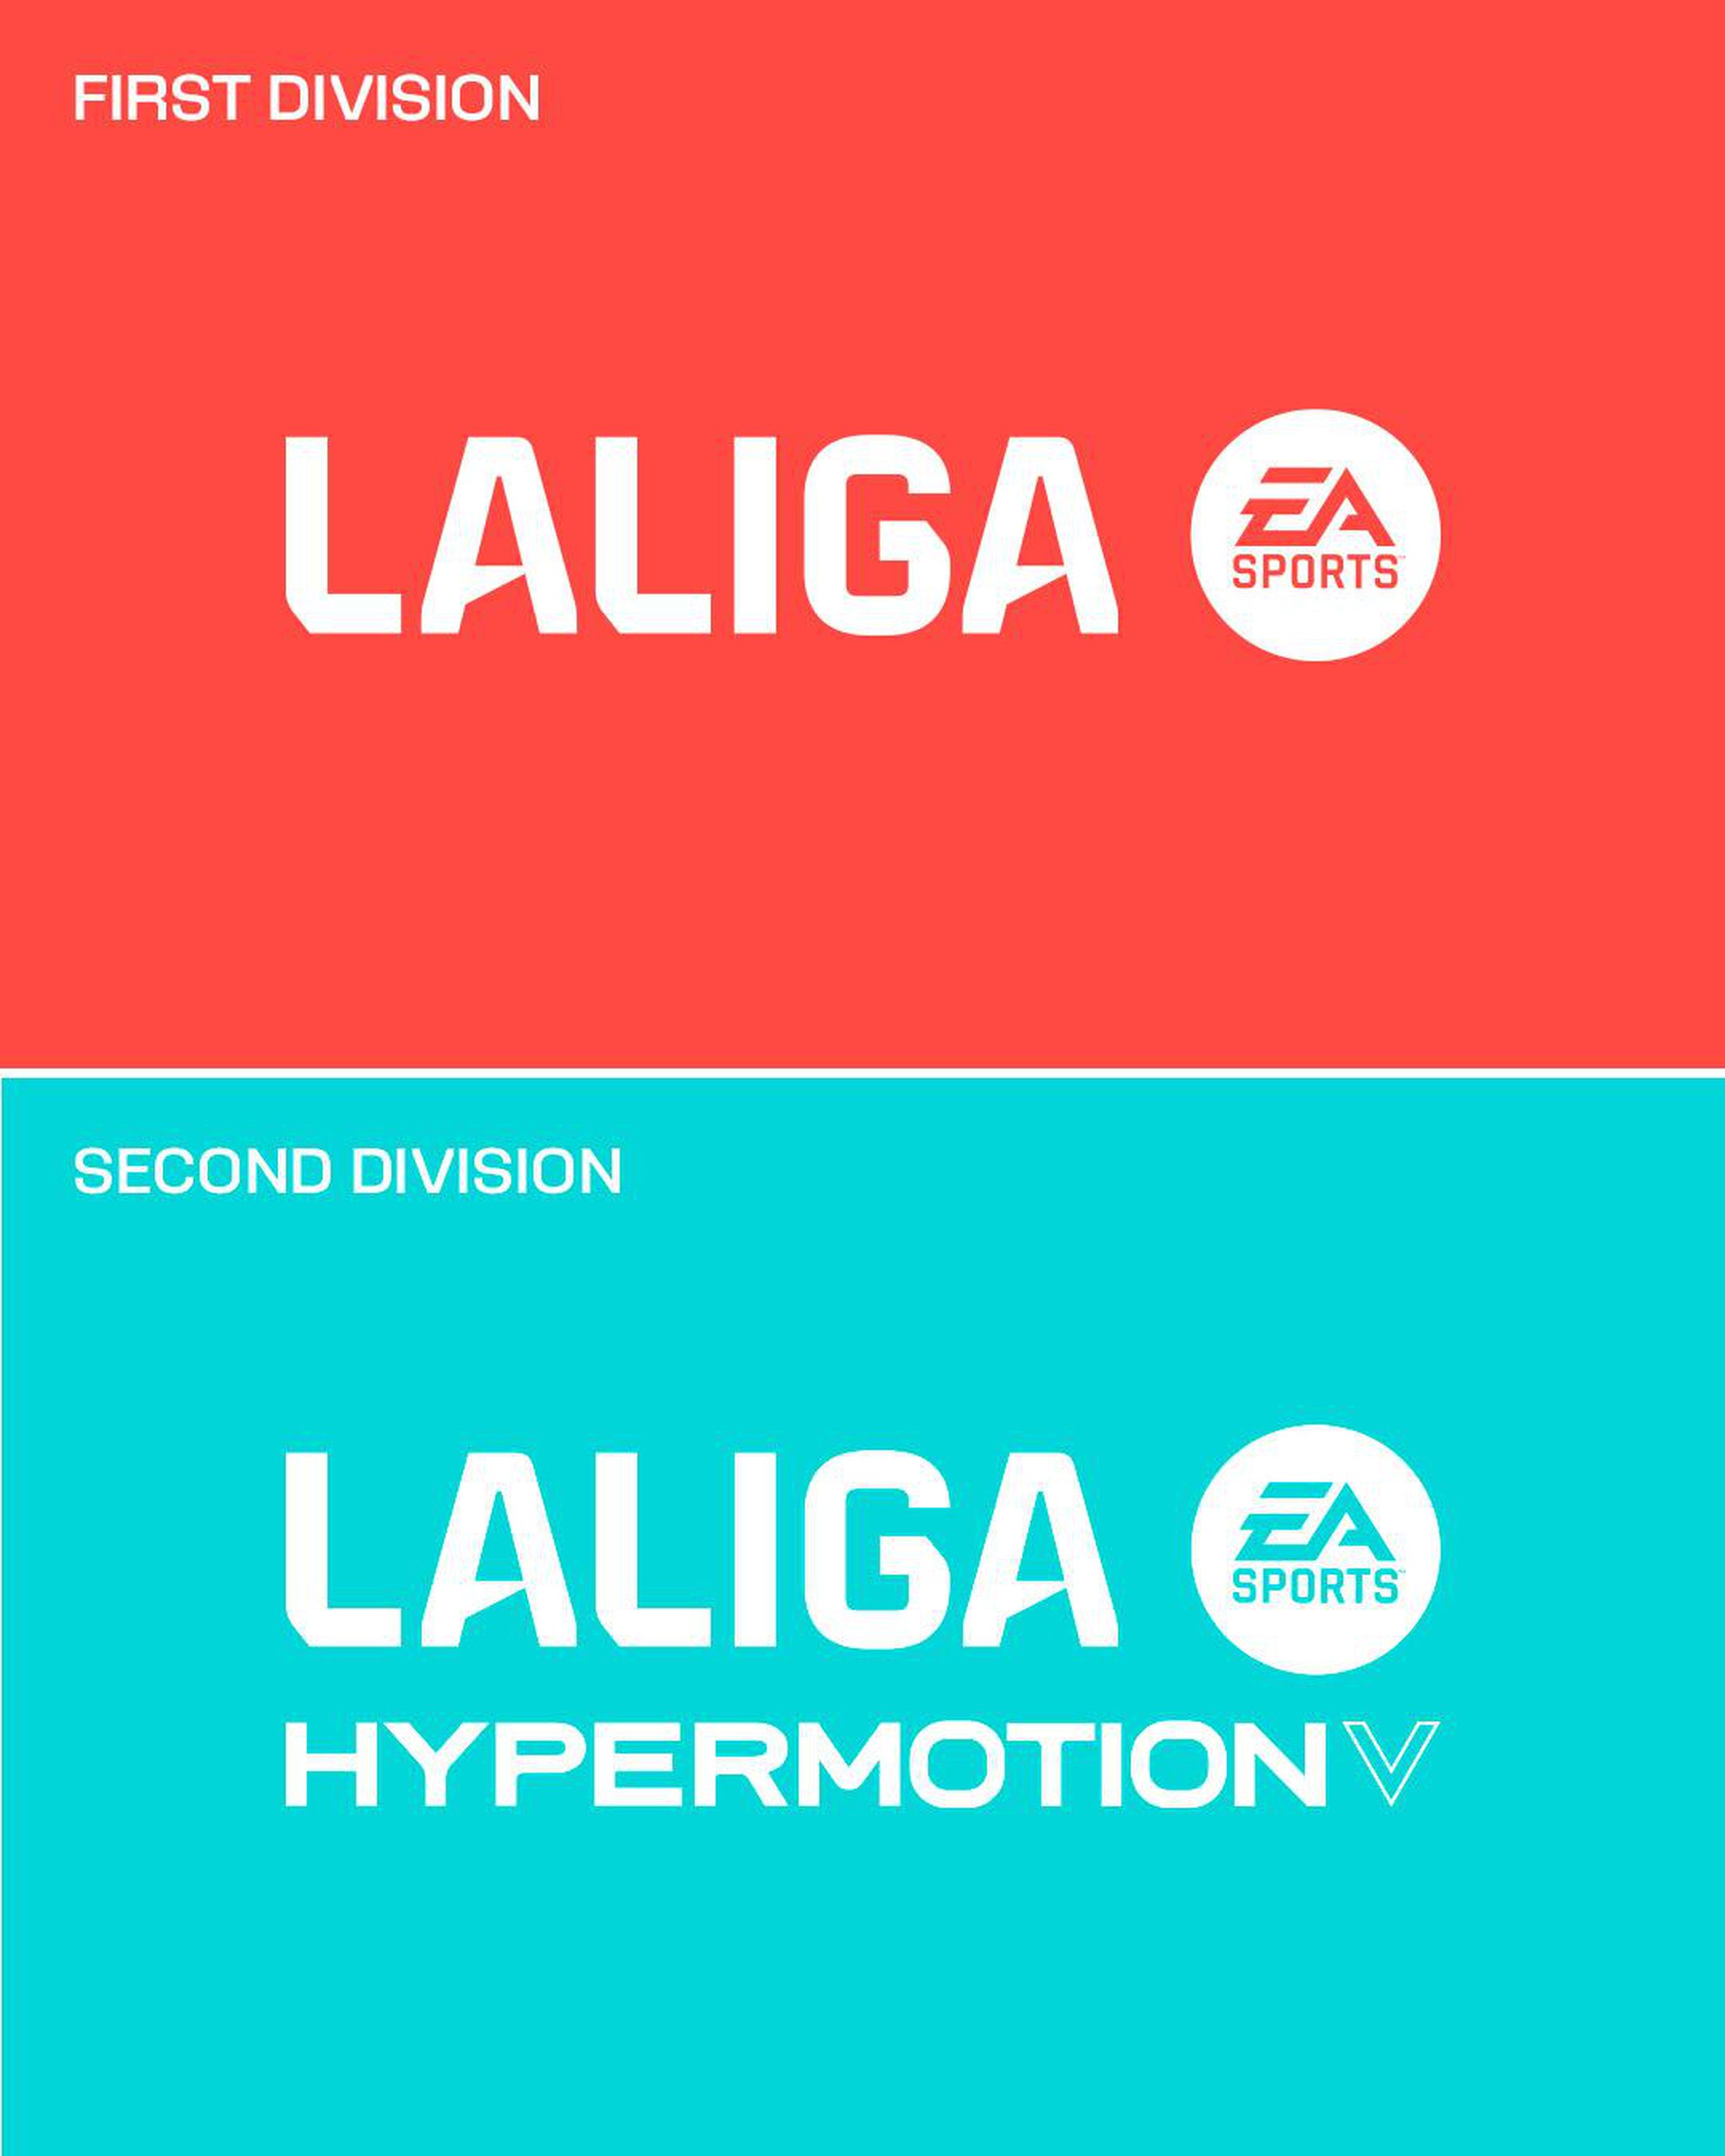 Rebranded logos for Spain’s soccer league LaLiga.